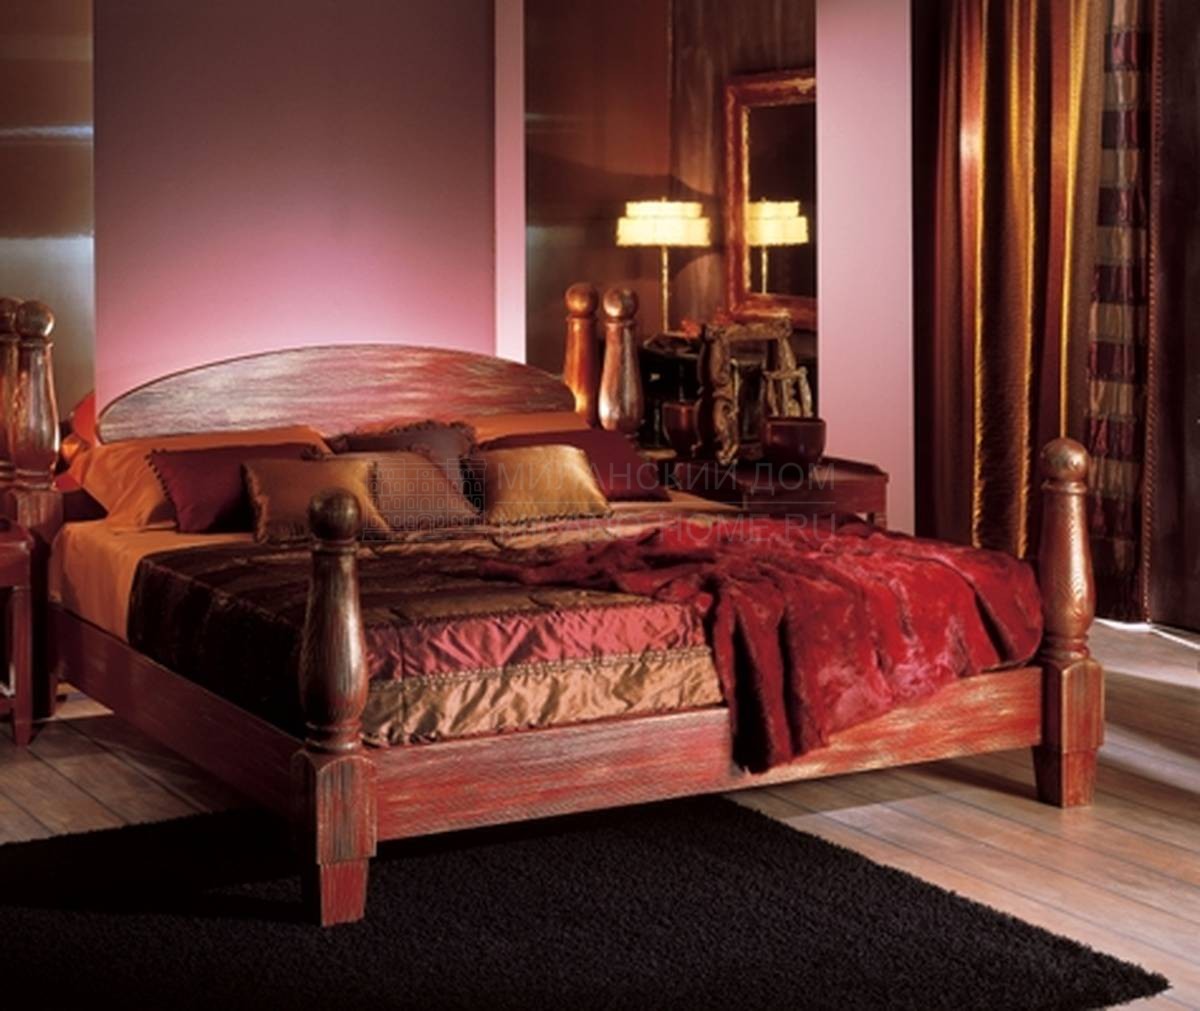 Двуспальная кровать De Baggis/L.0430/KS из Италии фабрики DE BAGGIS